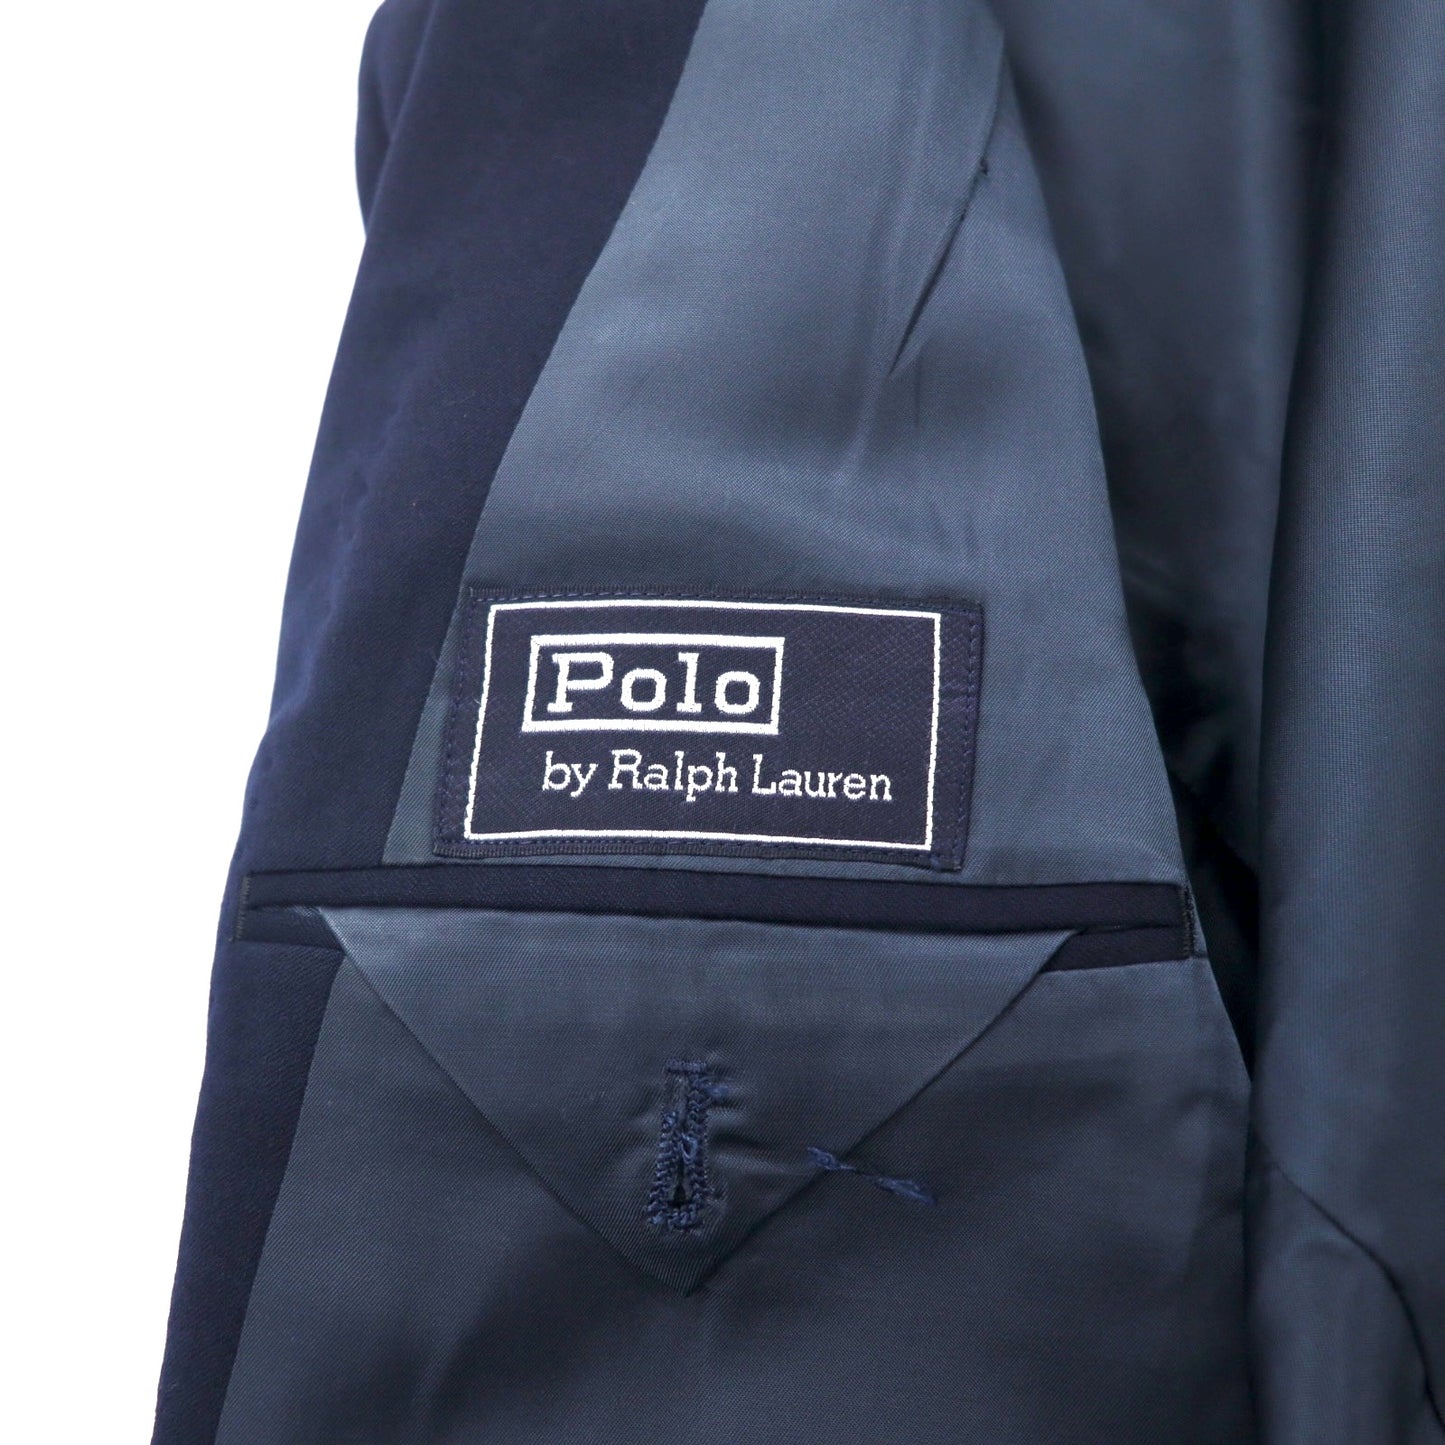 Polo by Ralph Lauren 3Bテーラードジャケット 紺ブレ 96-86-175 AB6 ネイビー ウール ギャバジン 金ボタン ポロボタン 日本製